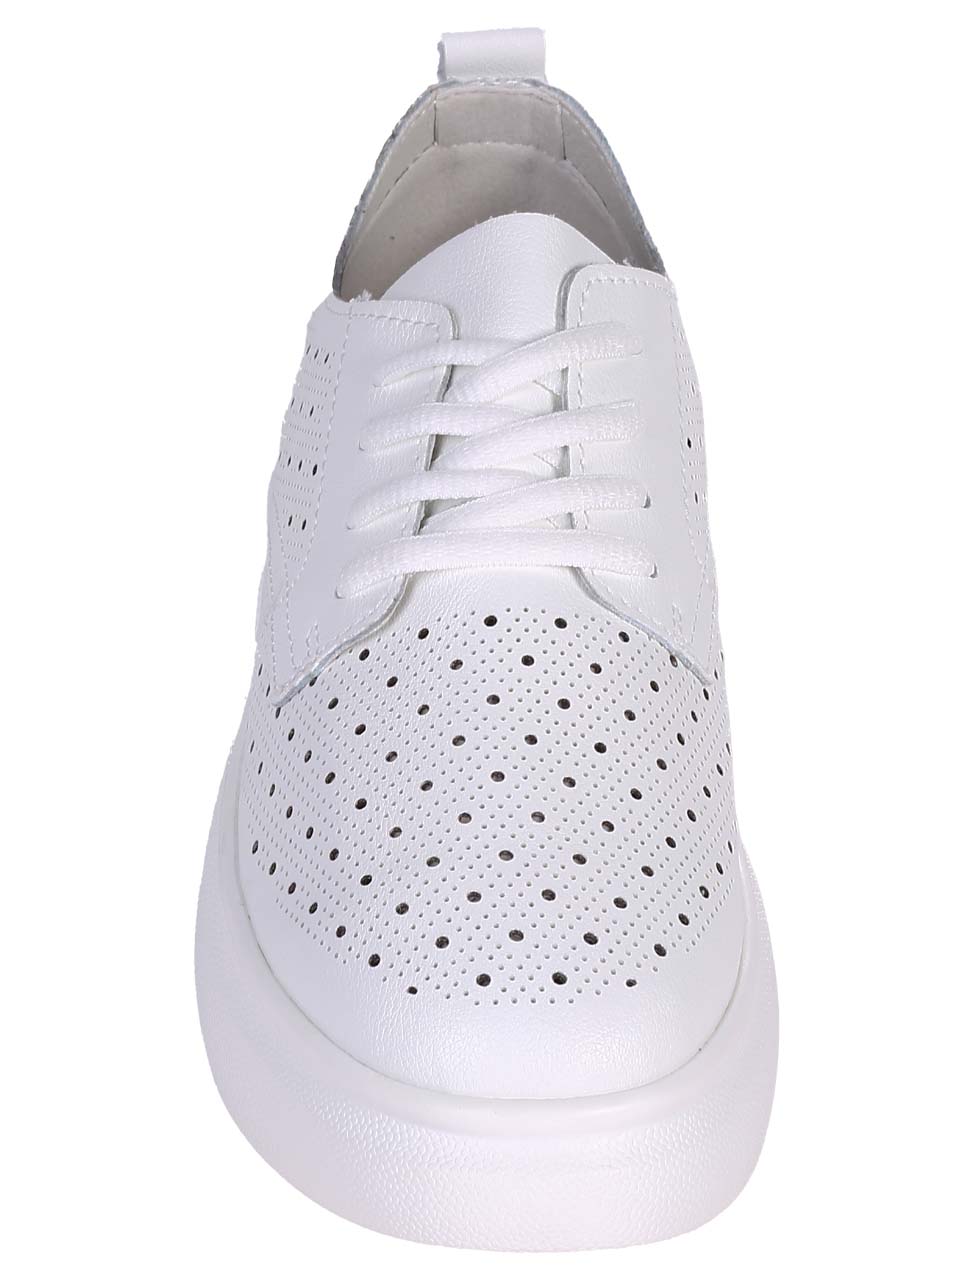 Ежедневни дамски обувки от естествена кожа в бяло 3AF-24051 white